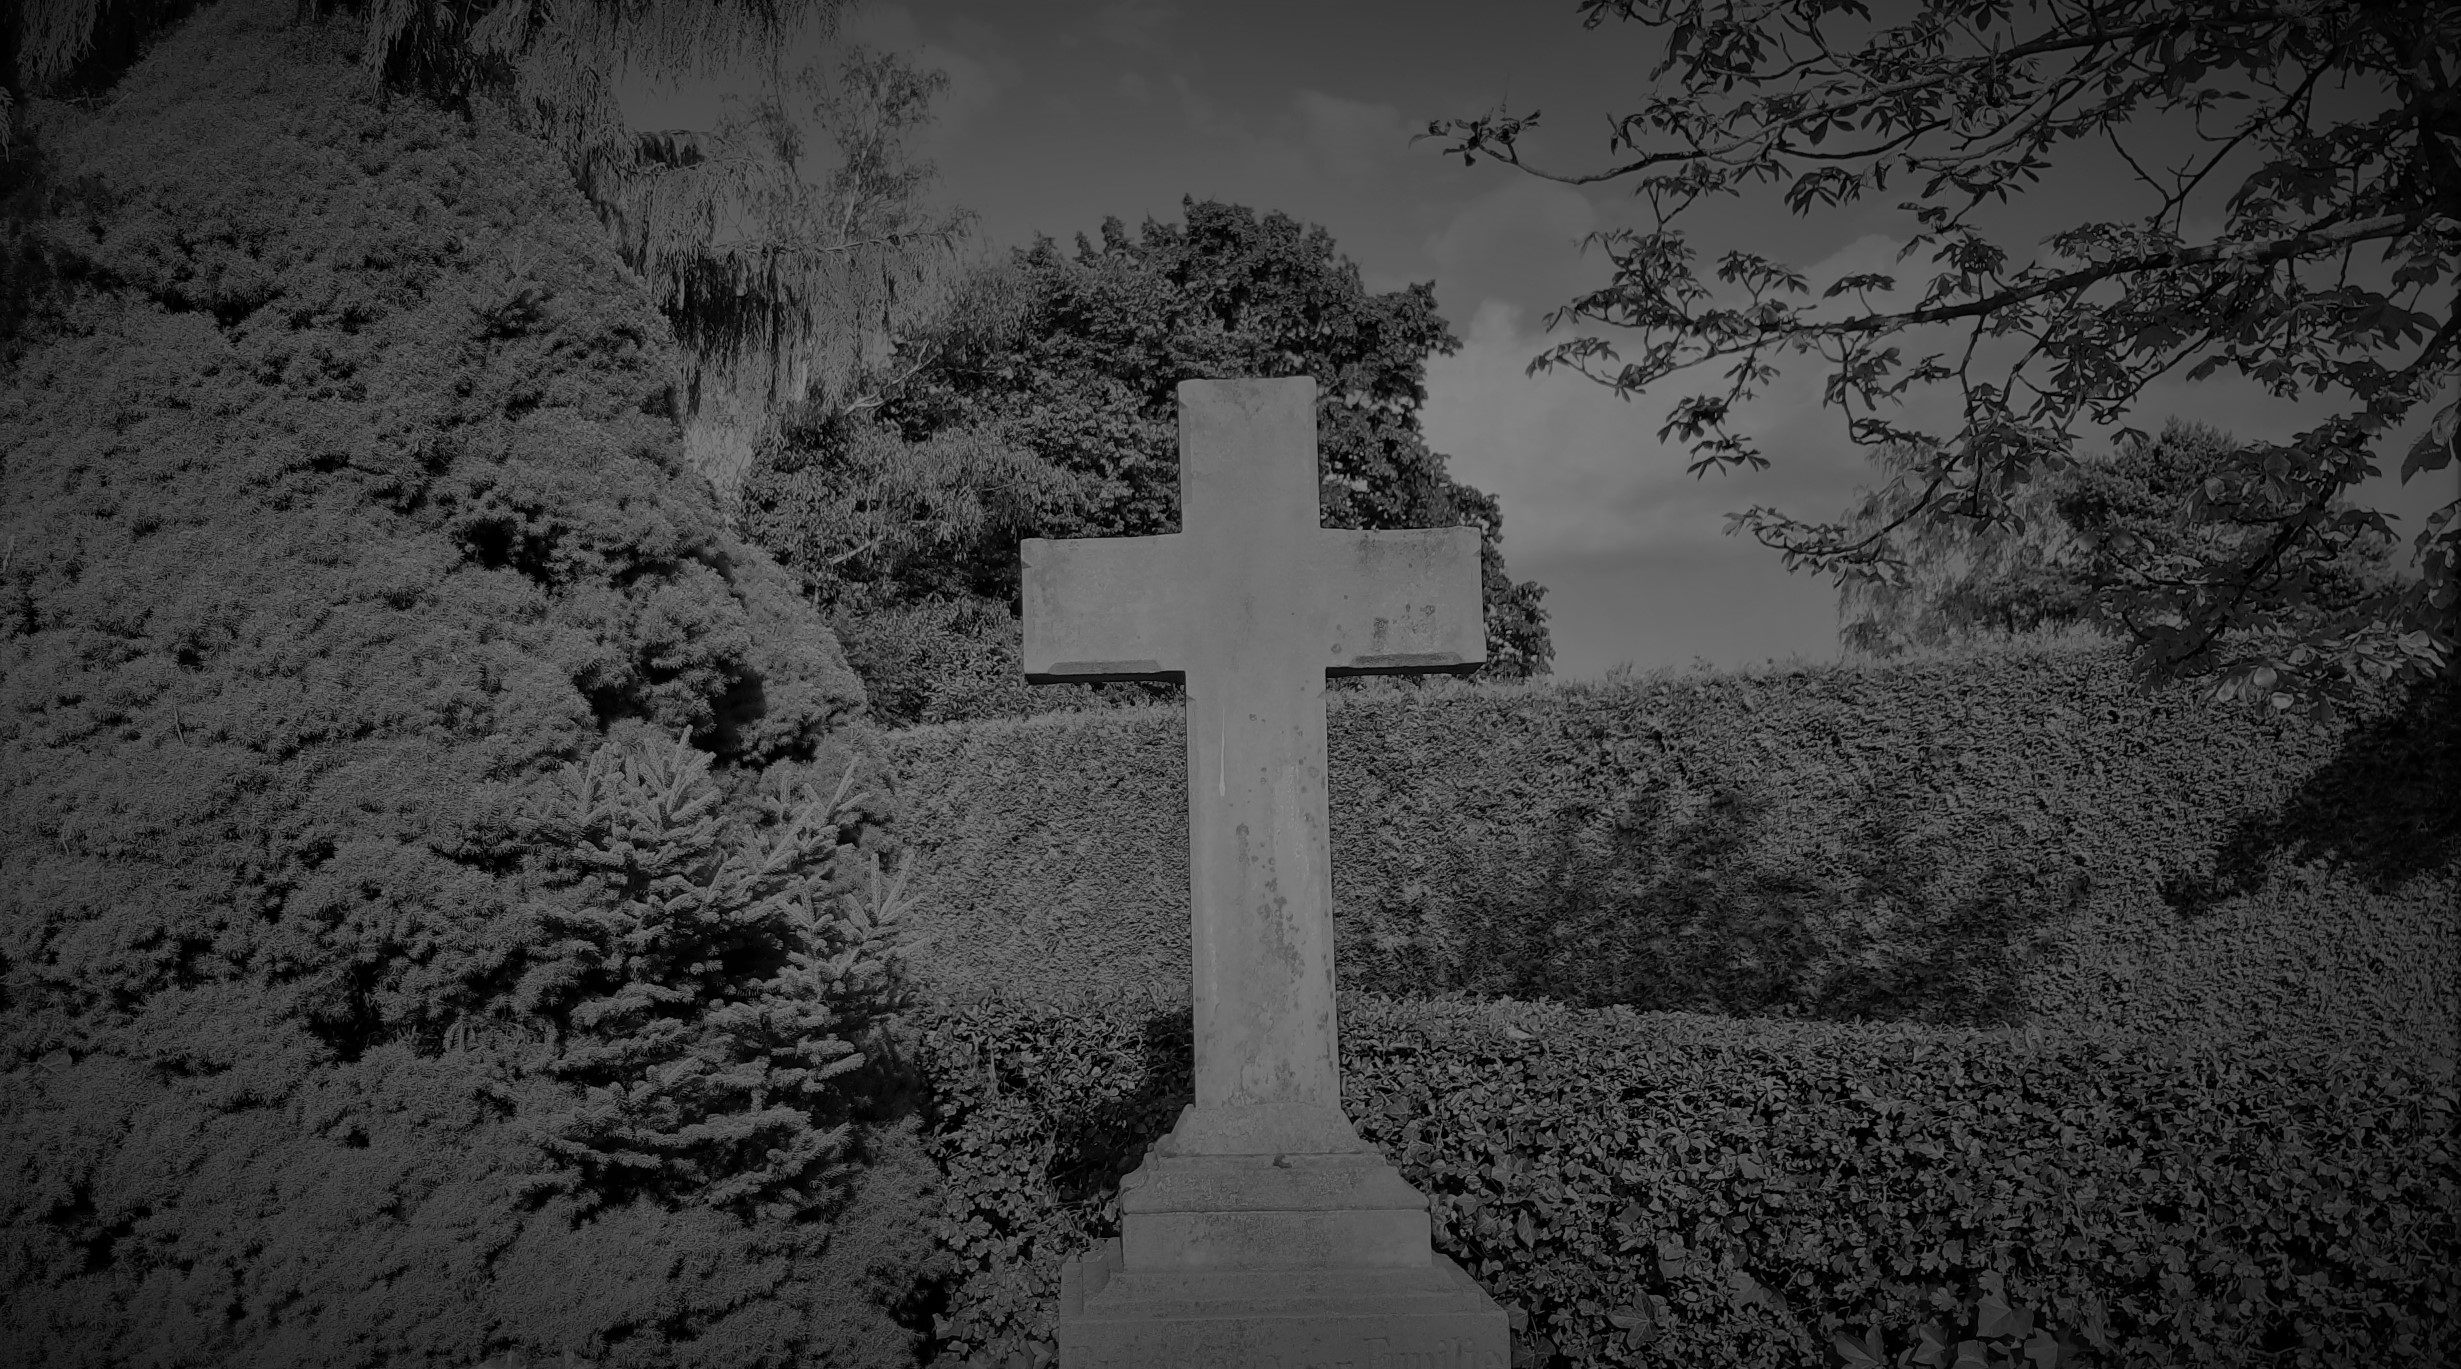 Friedhofsbesucherin am Grab kniend beraubt – Fotofahndung